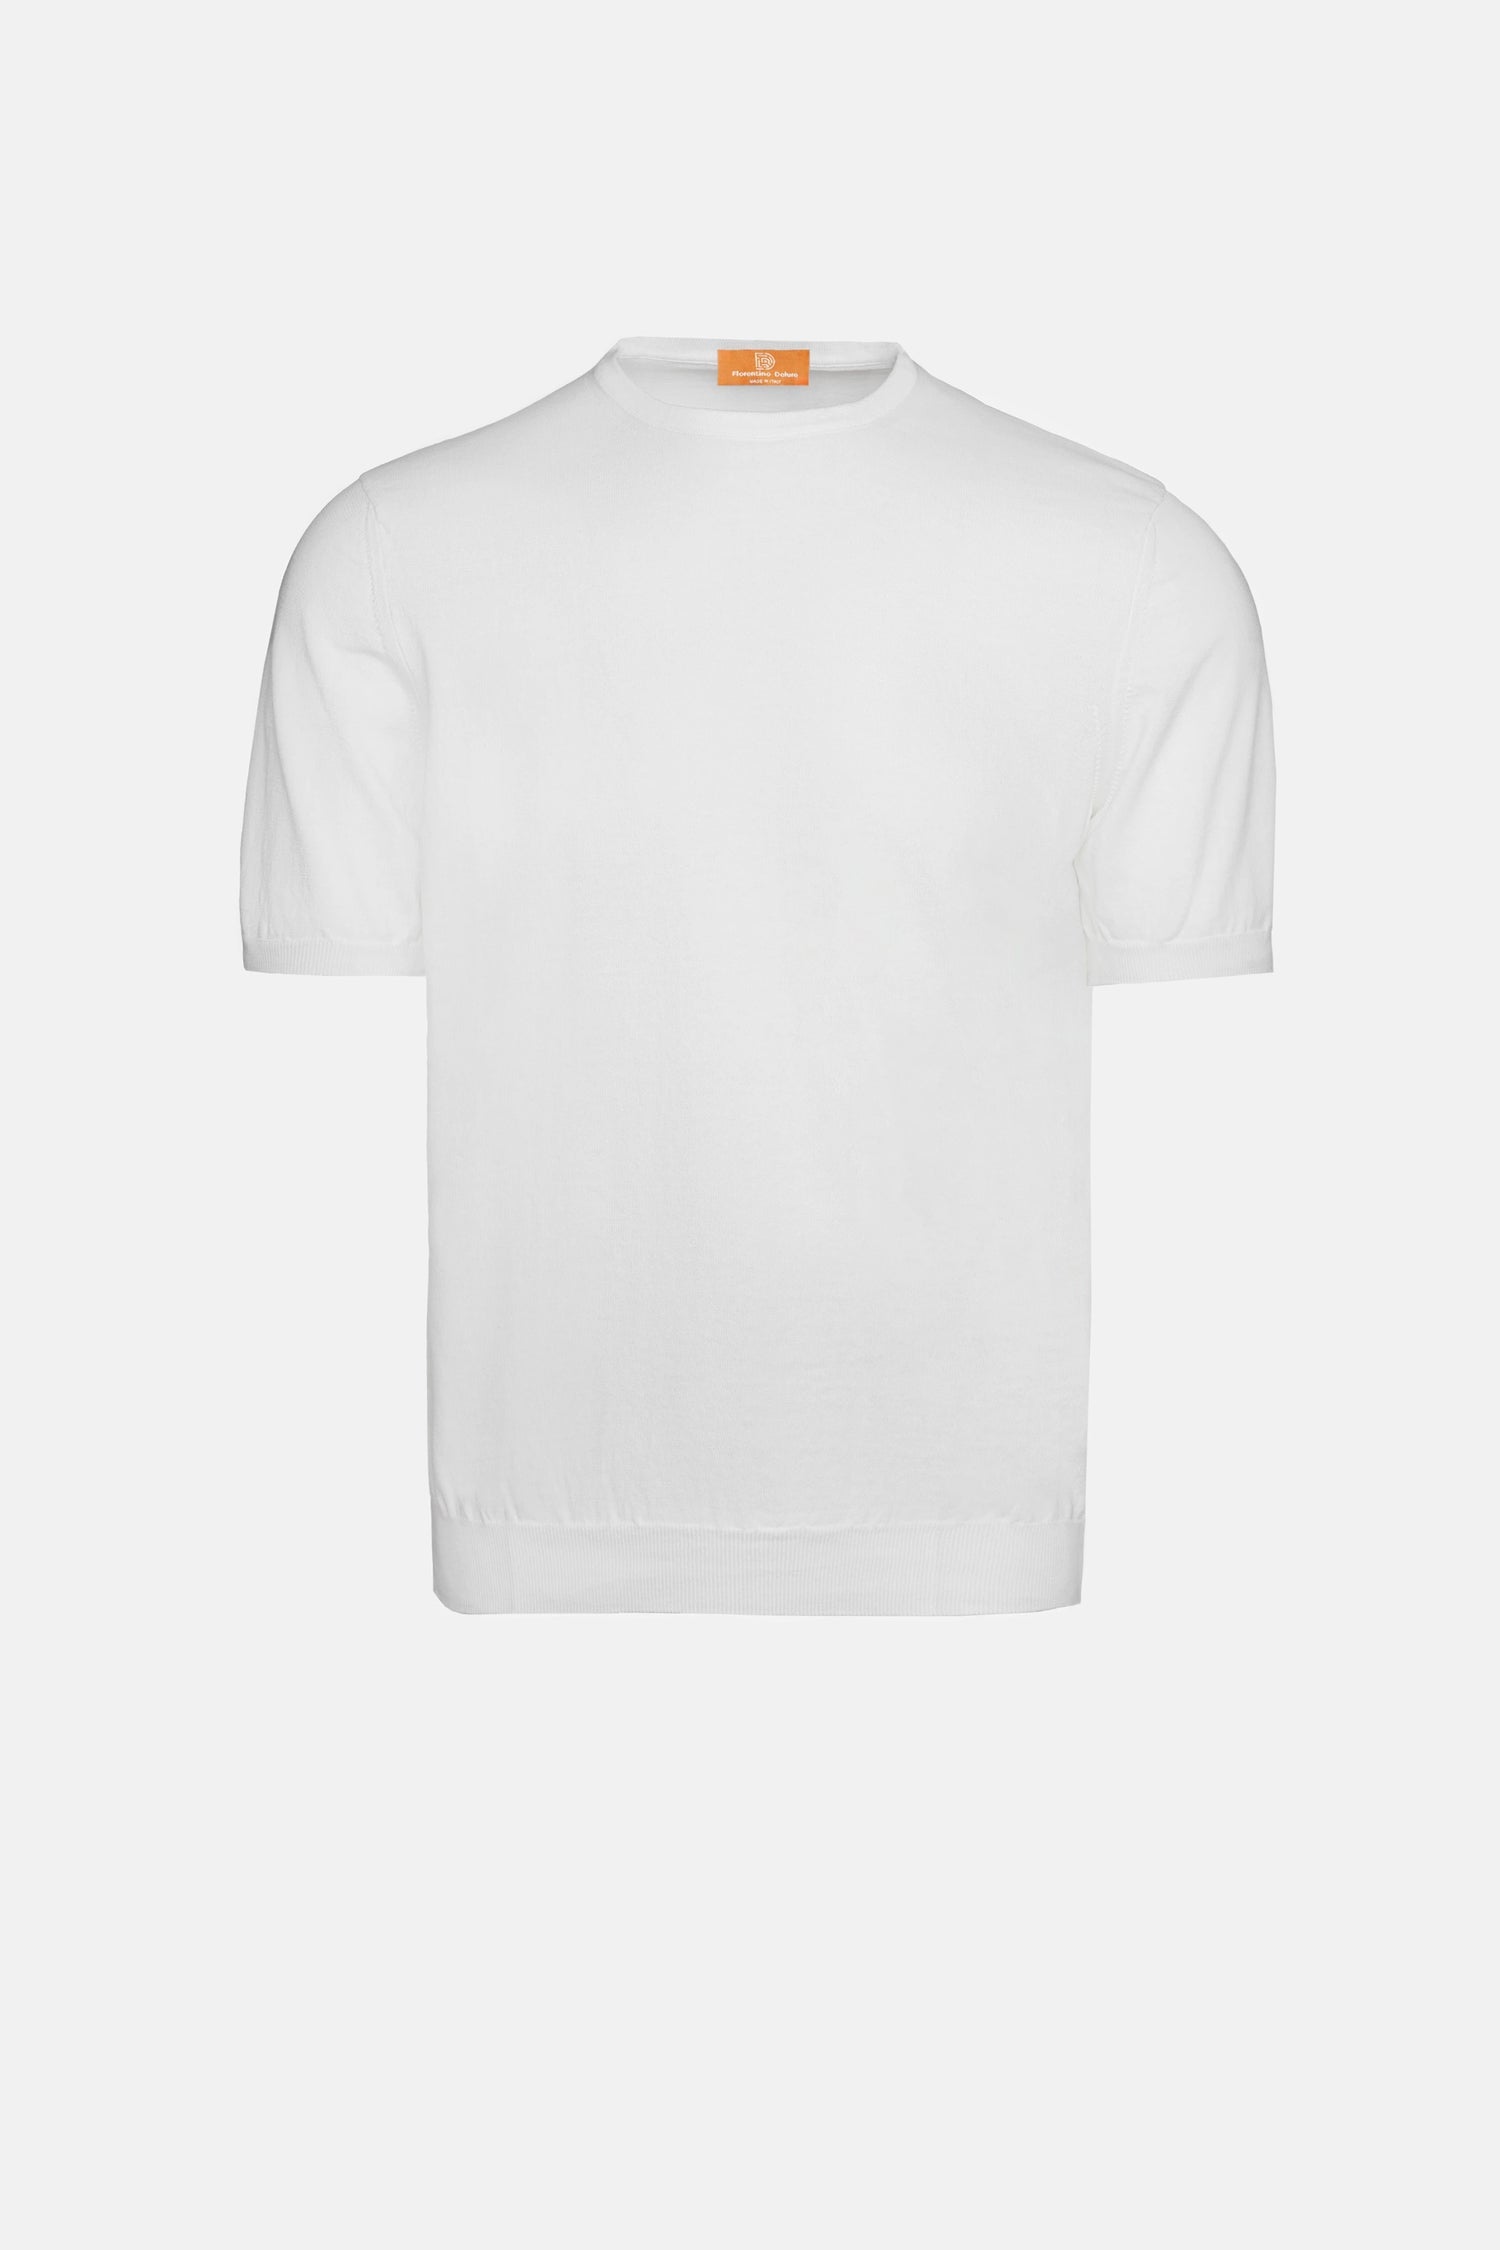 White Cotton T-Shirt Menswear T-Shirts